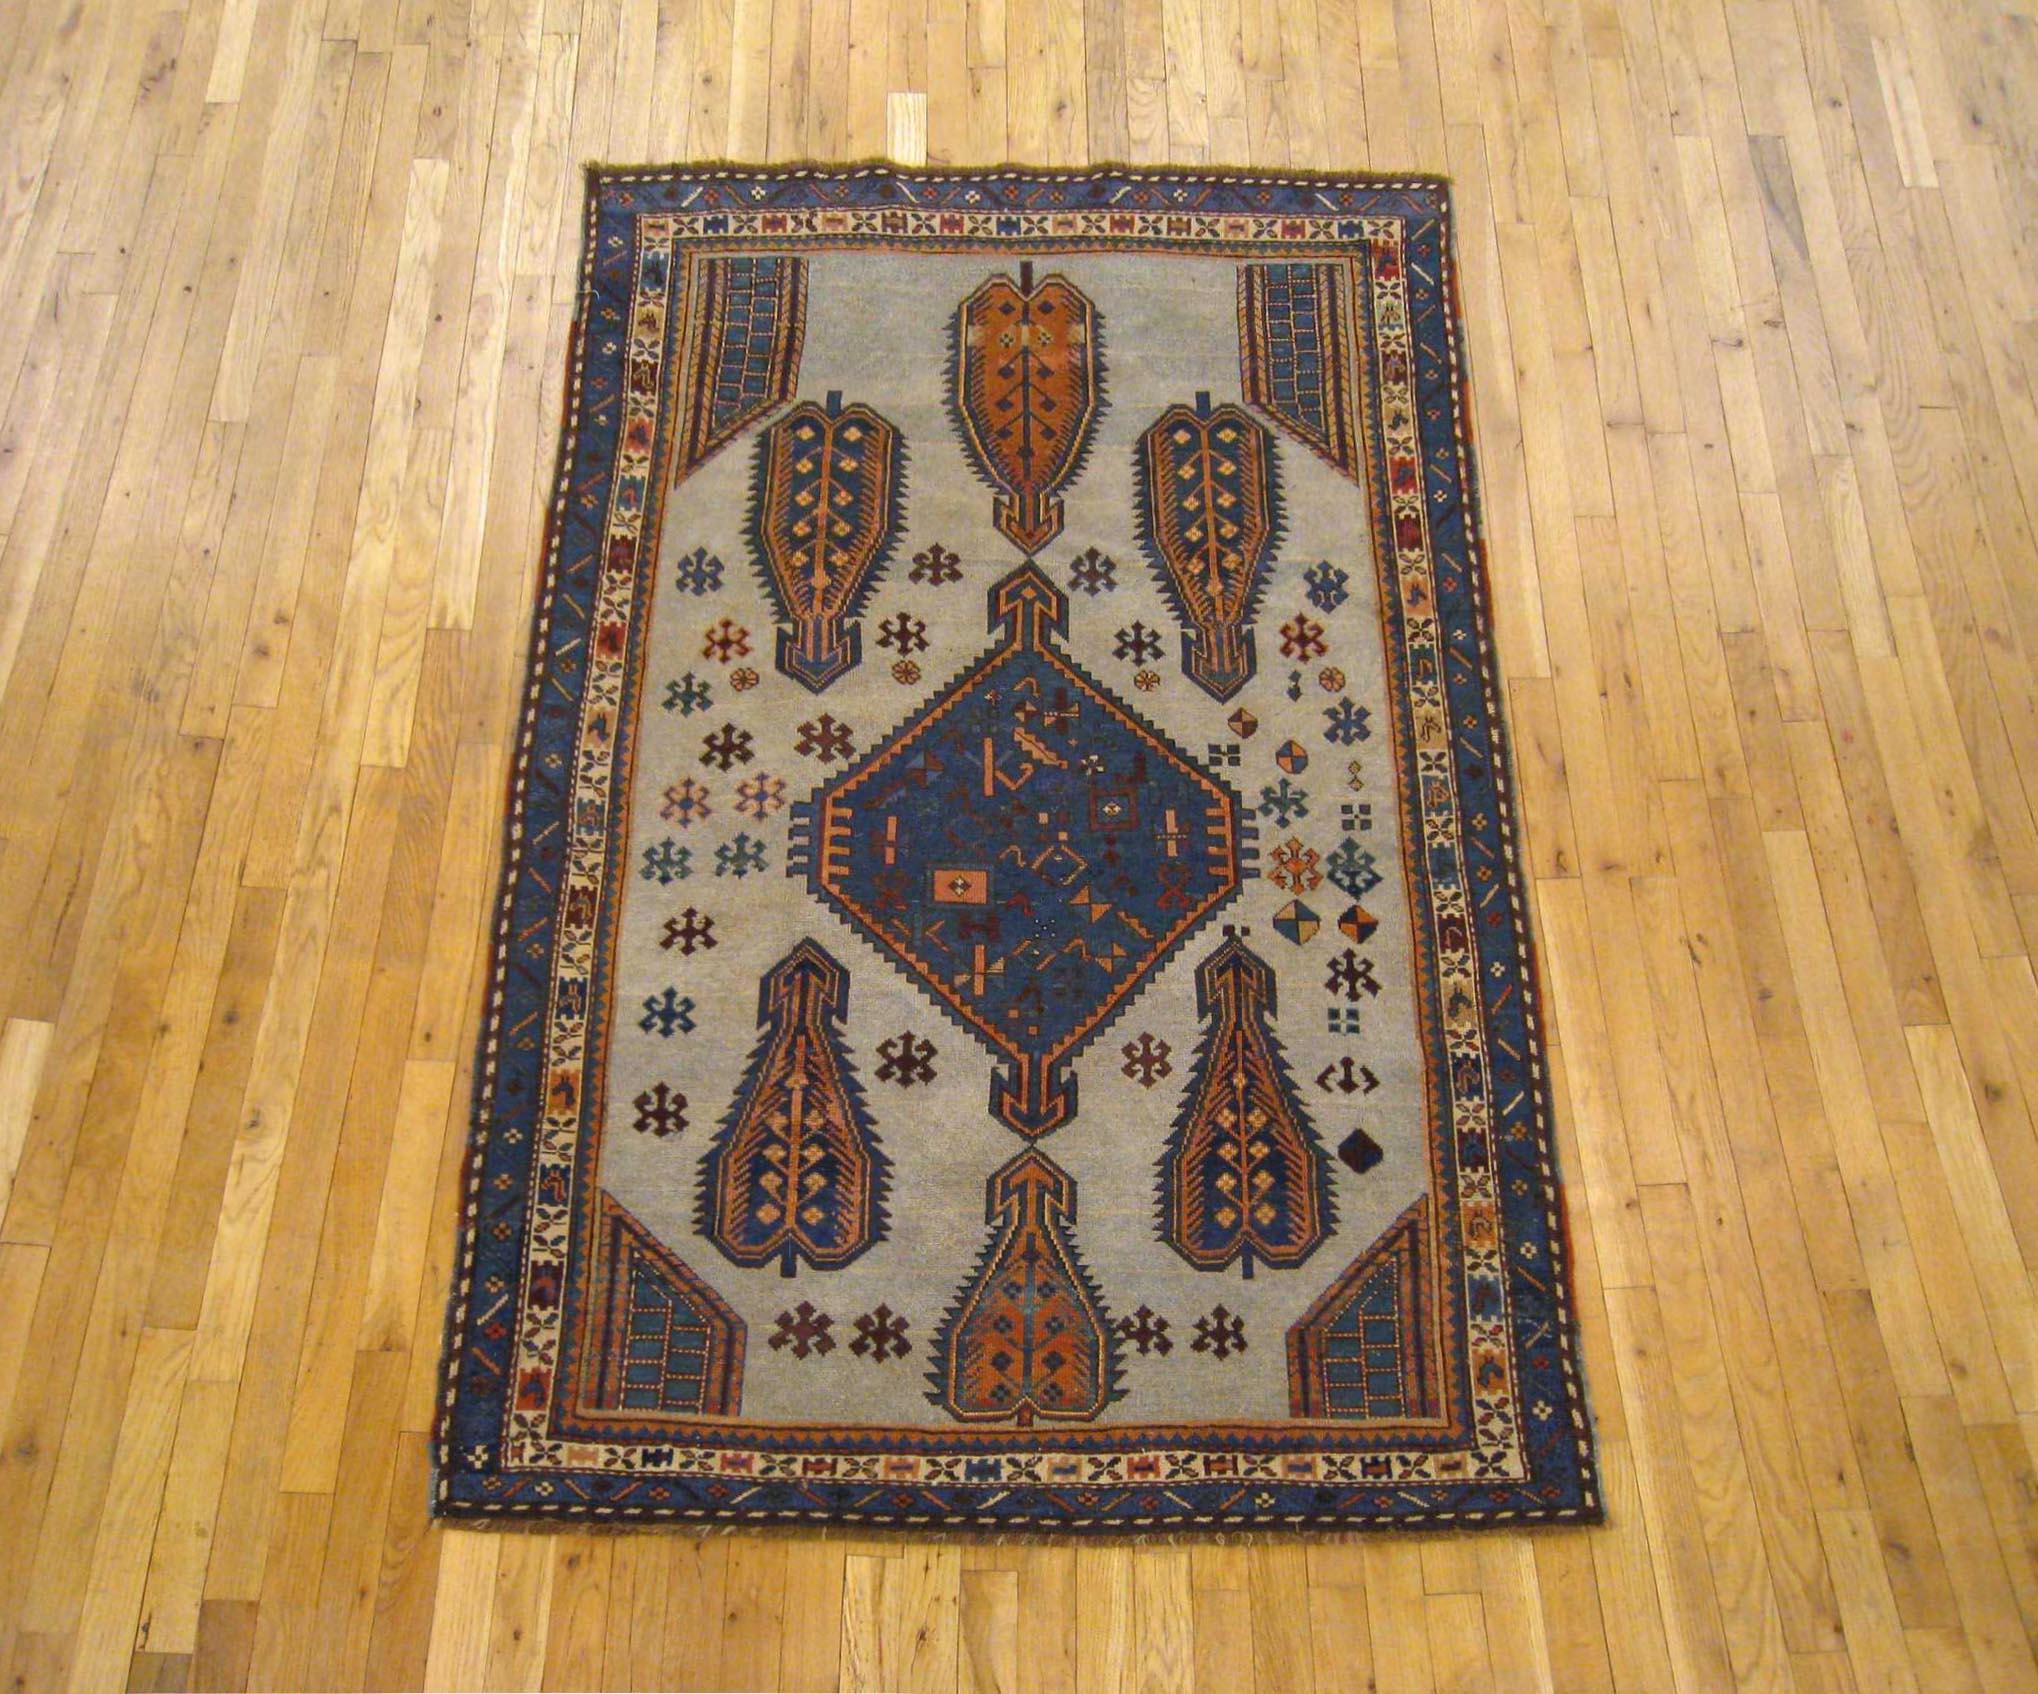 Antiker kaukasischer kasachischer Orientteppich, kleines Format, um 1900

Ein einzigartiger antiker kaukasischer Kazak-Oriental-Teppich, handgeknüpft mit weichem Wollflor. Dieser hübsche, handgeknüpfte Wollteppich zeigt ein zentrales Medaillon mit